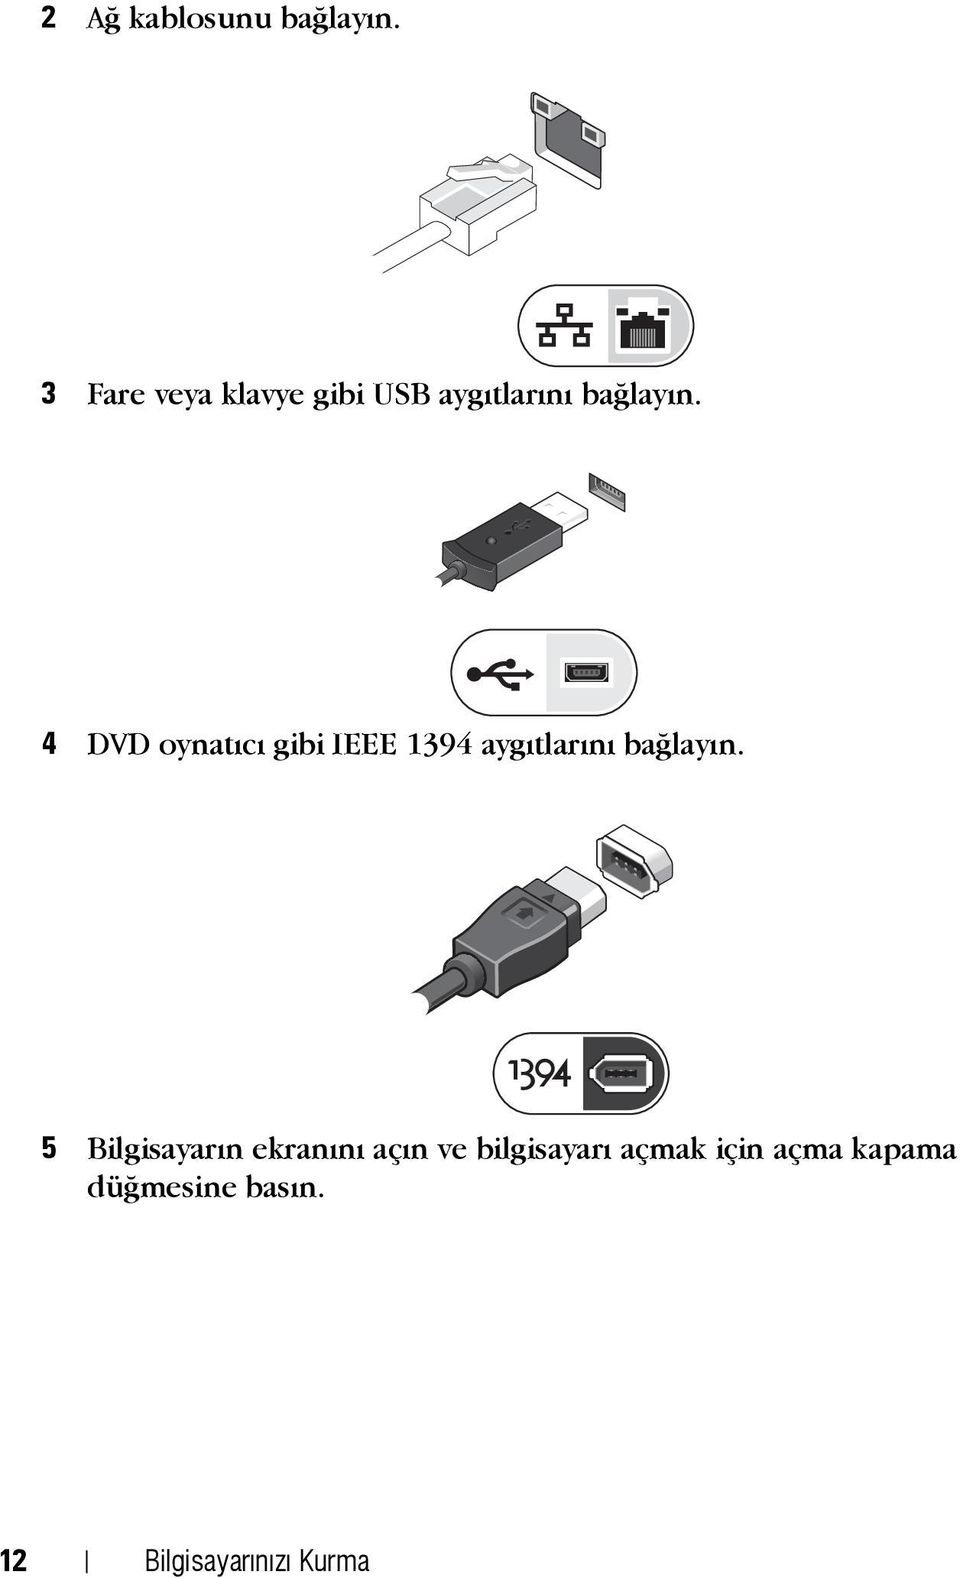 4 DVD oynatýcý gibi IEEE 1394 aygýtlarýný baðlayýn.